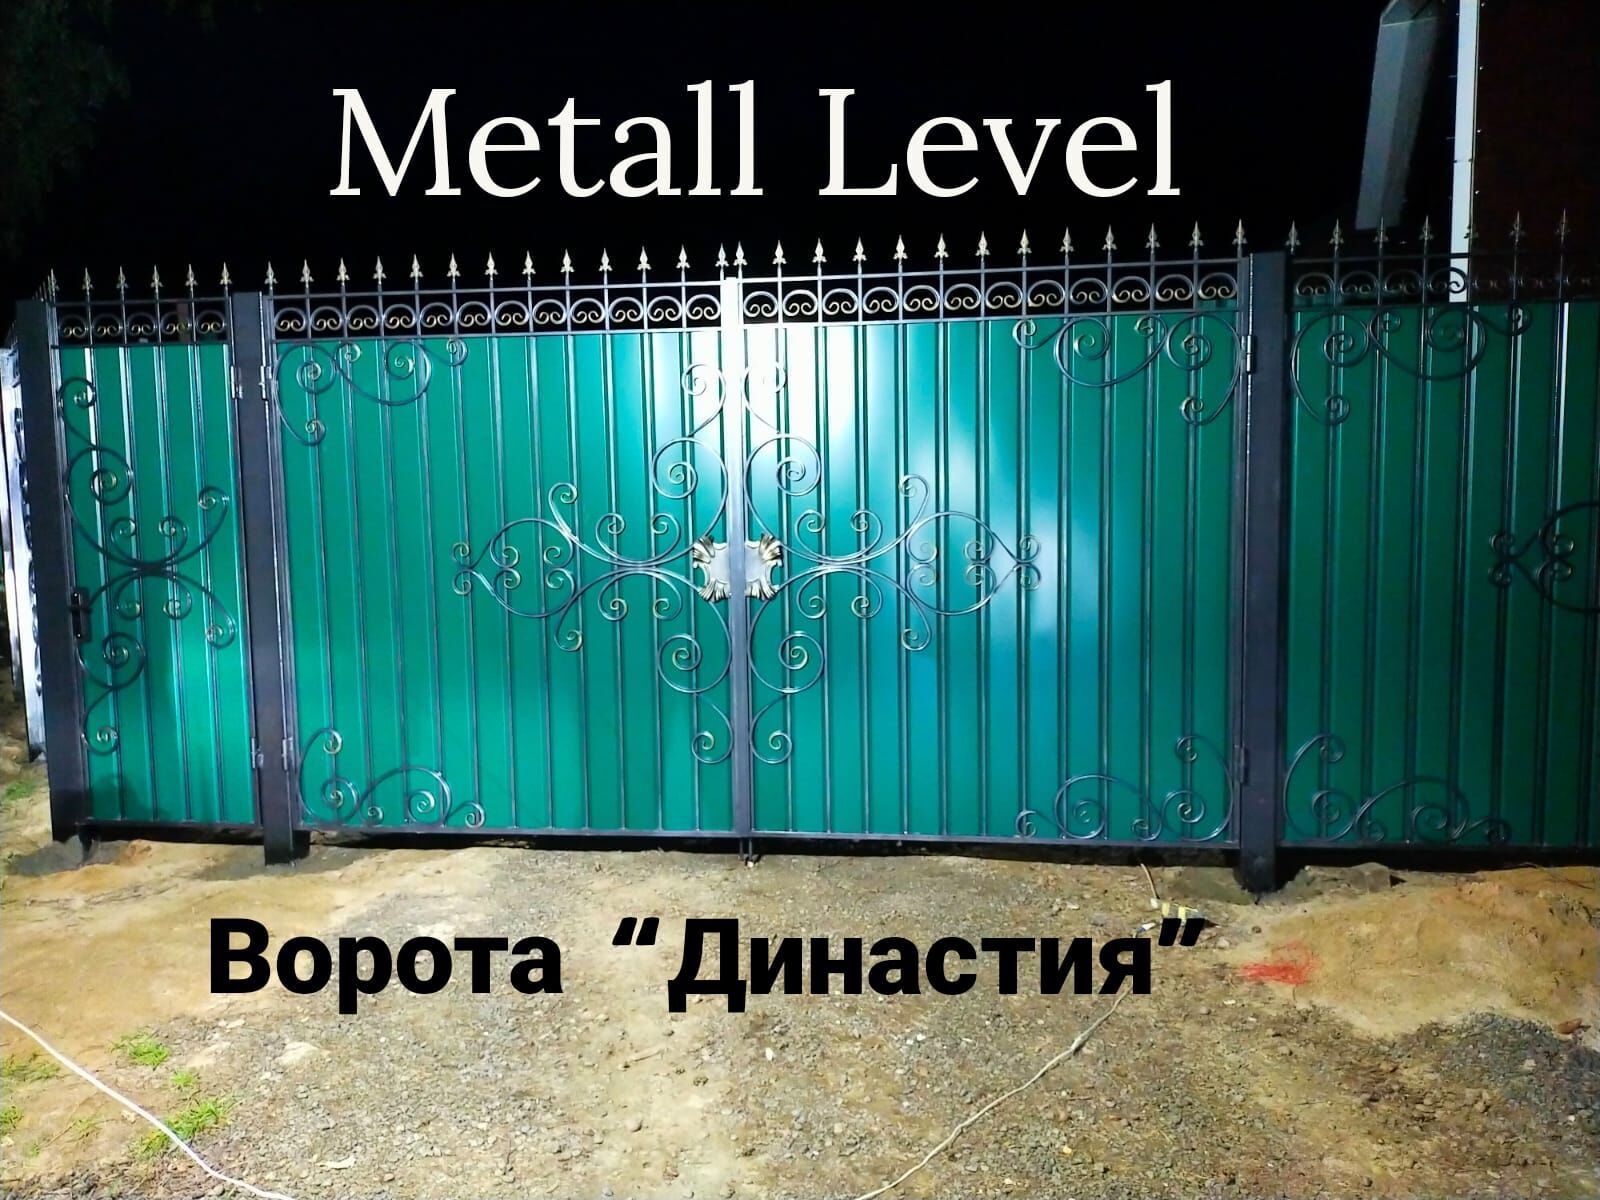 Ворота металлические кованые "Династия" 4080х2100 мм